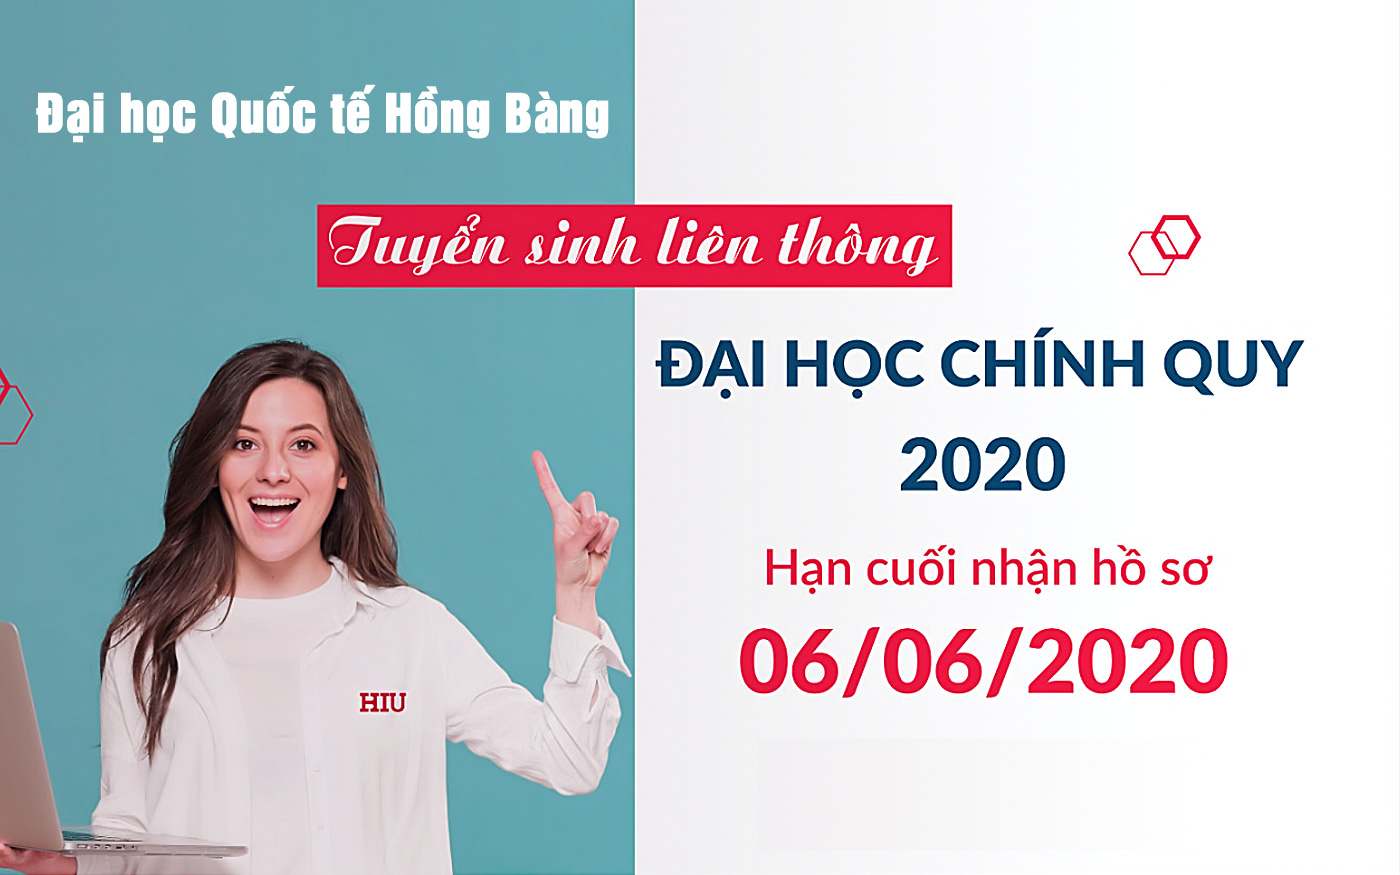 Đại học Quốc tế Hồng Bàng tuyển sinh liên thông đại học chính quy 2020 - Ảnh 1